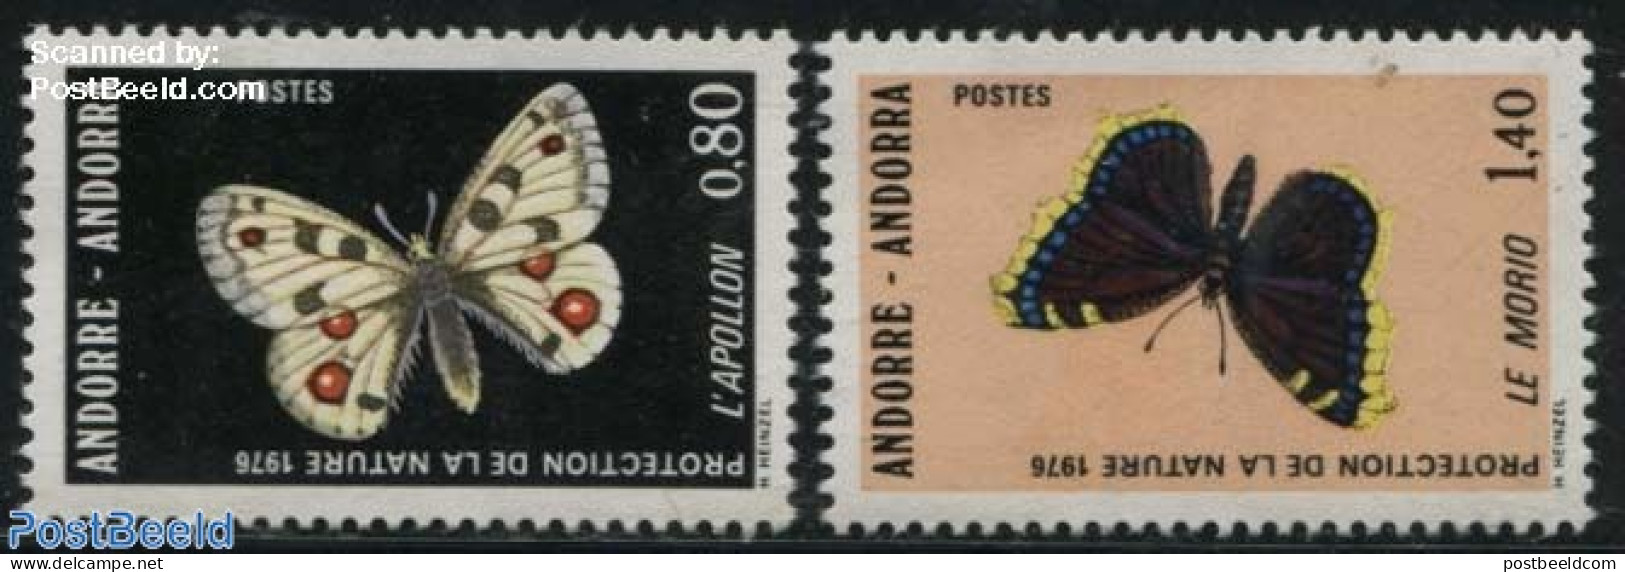 Andorra, French Post 1976 Butterflies 2v, Mint NH, Nature - Butterflies - Ungebraucht